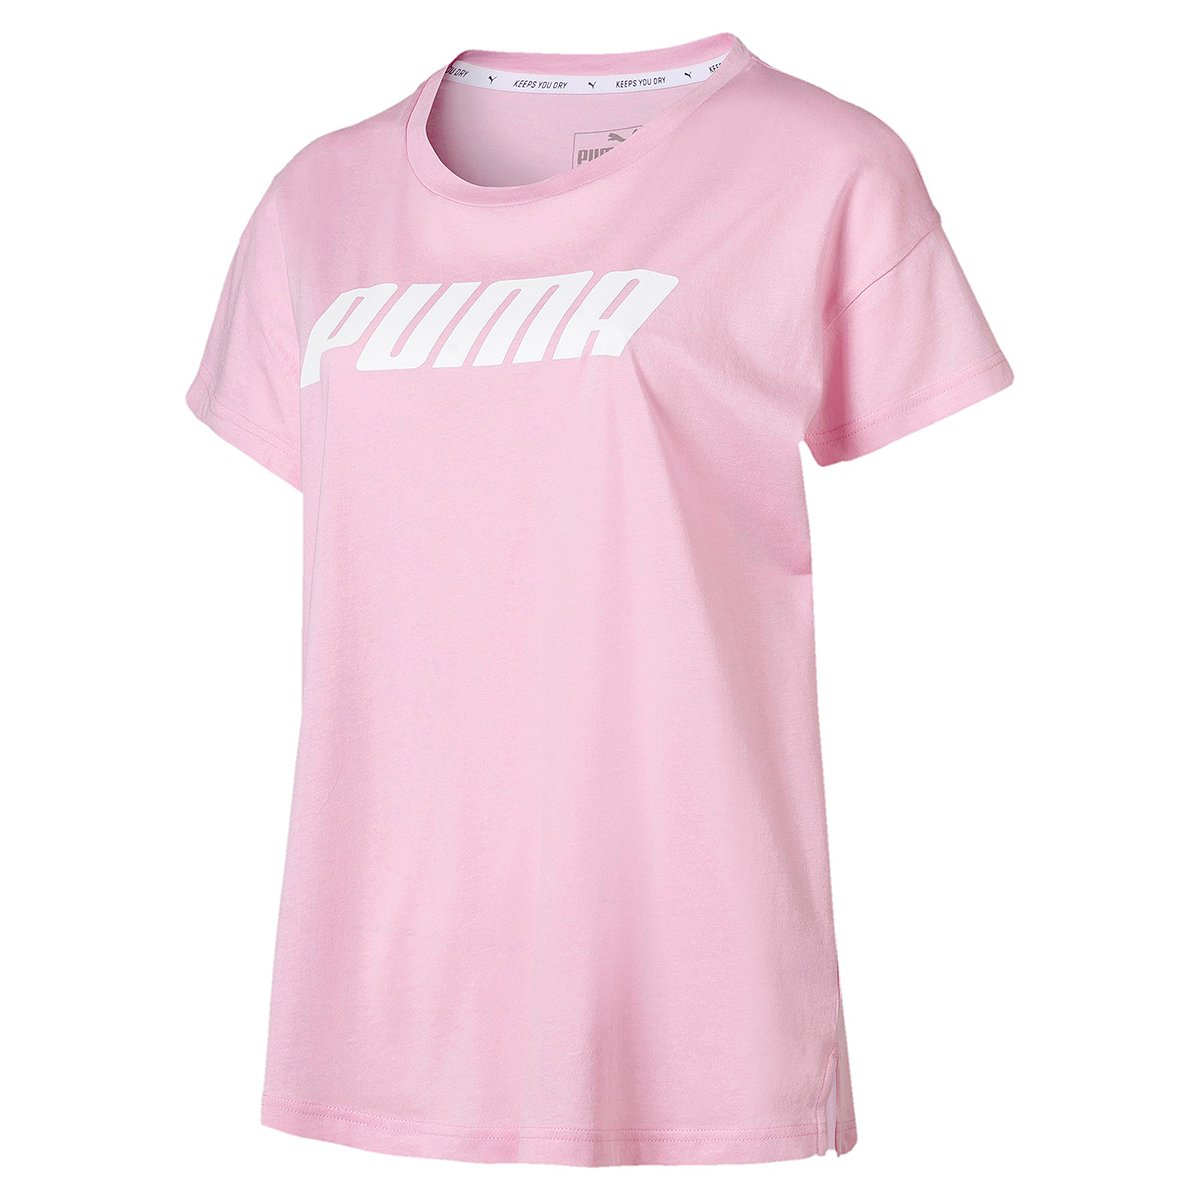 PUMA Damen Modern Sports Logo Tee DryCell T-Shirt pink 855188 21